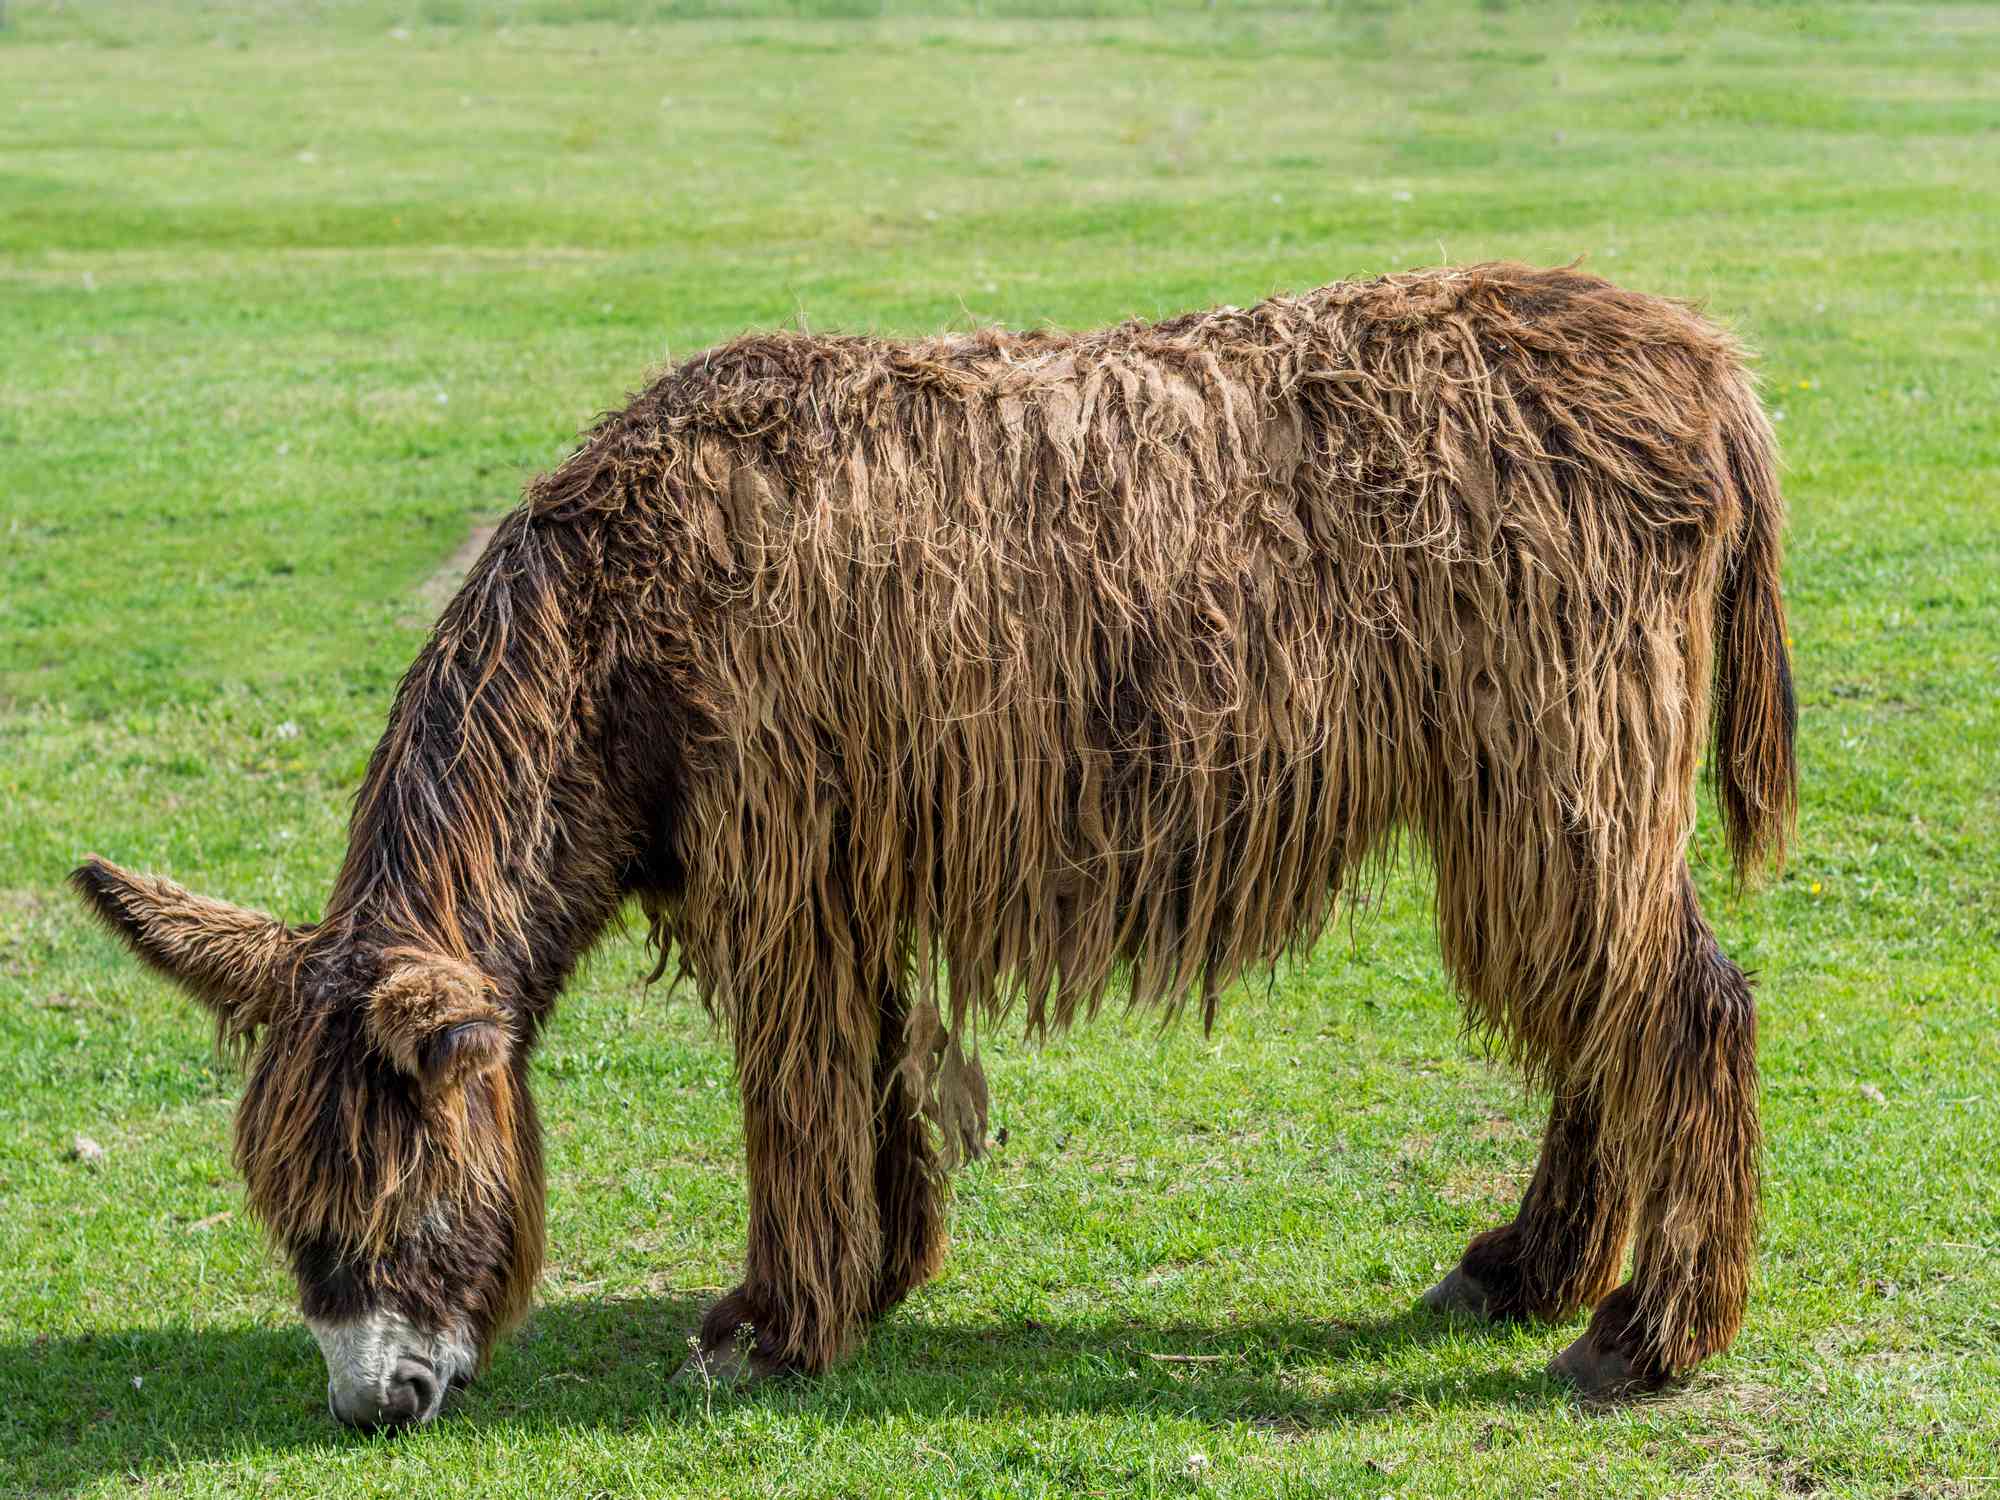 perfil del burro de Poitou pastando con pelo largo y desgreñado de color marrón